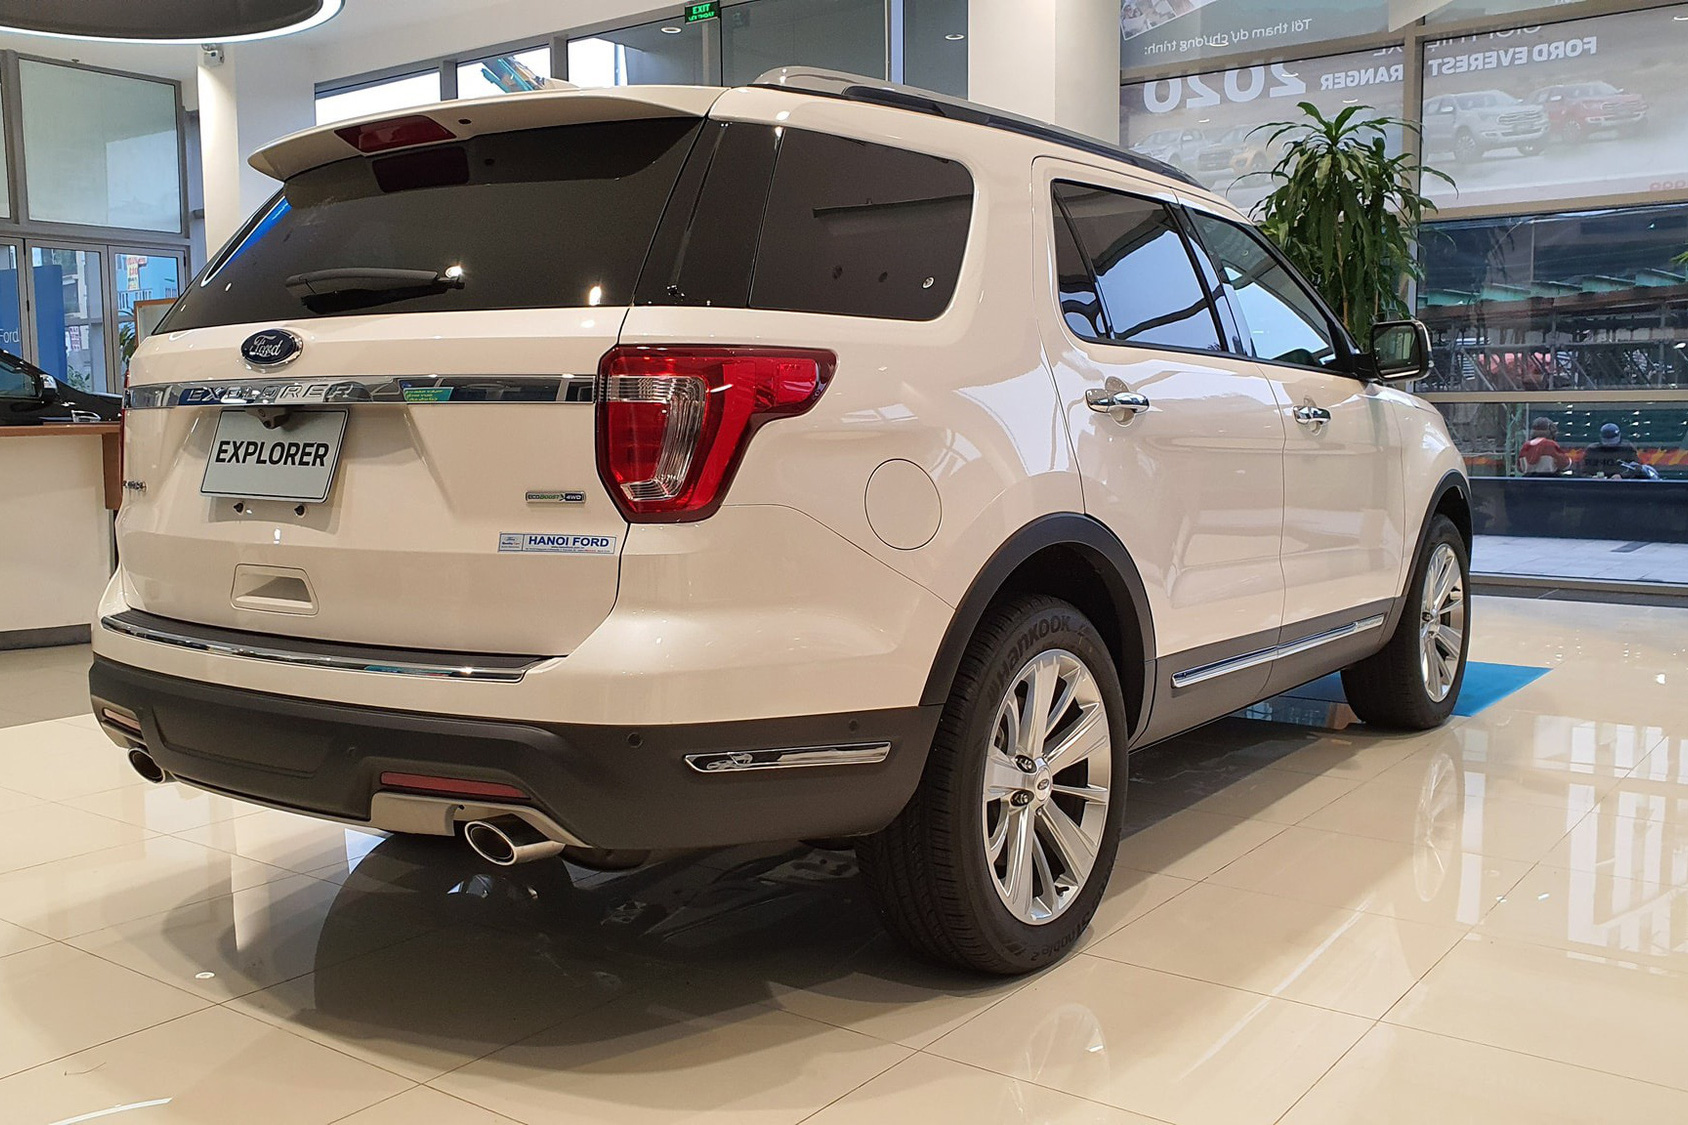 Ford Explorer liên tục giảm giá, xuống mức thấp kỷ lục 1,9 tỷ đồng - Ảnh 2.